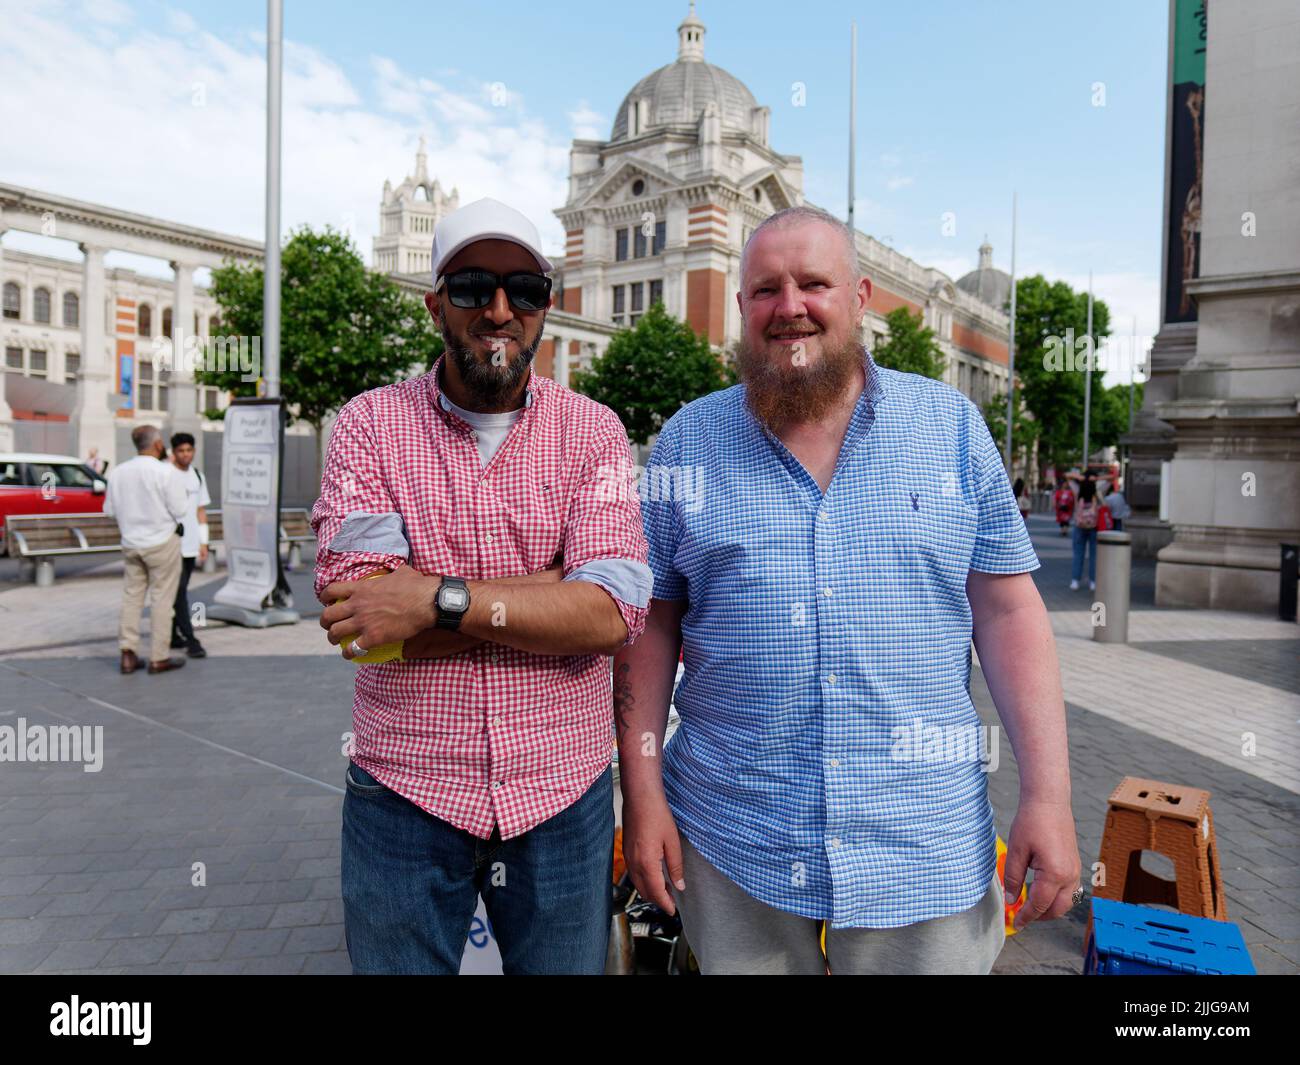 Londres, Grand Londres, Angleterre, 15 juin 2022 : deux hommes barbus dont un avec des lunettes de soleil et une casquette sourient et posent pour une photo sur Exhibition Road. Banque D'Images